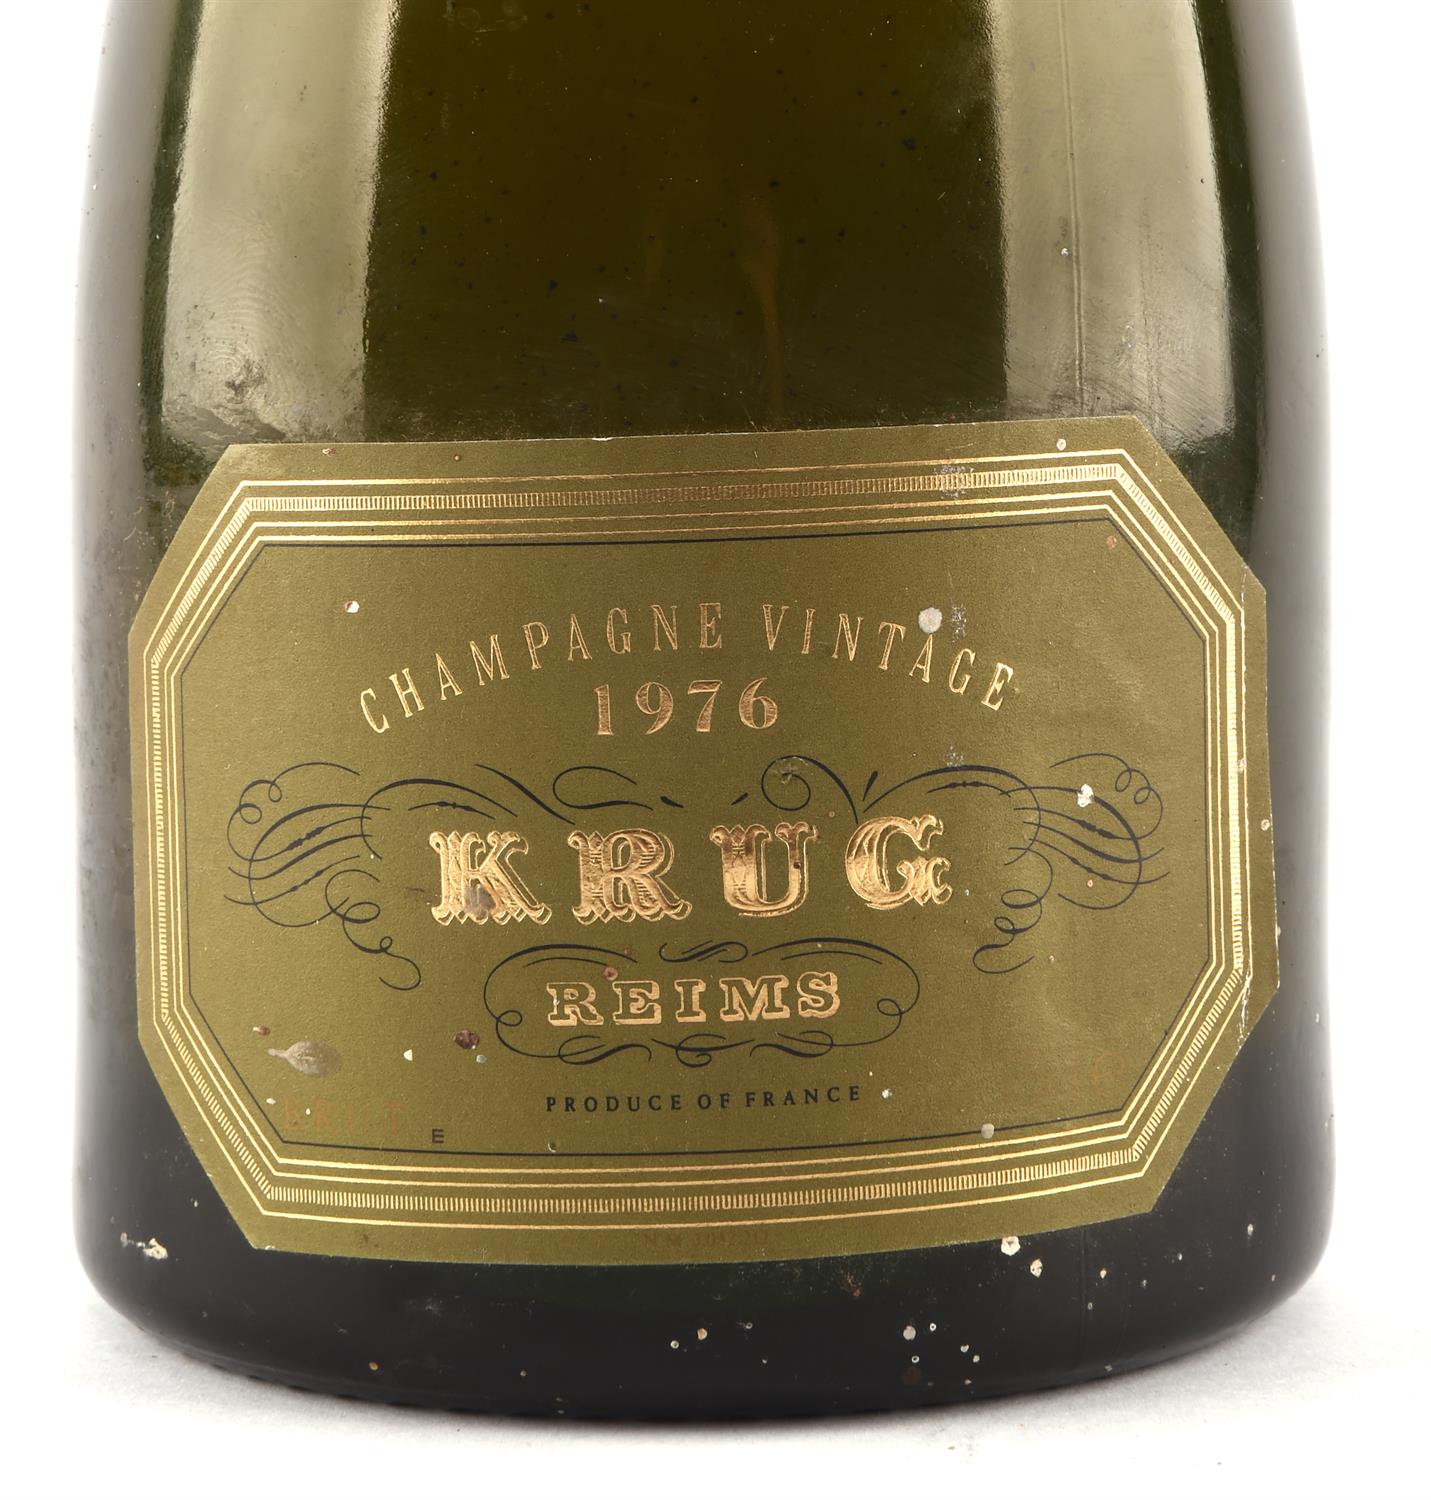 Champagne, Krug 1976, 1 bottle - Image 2 of 4